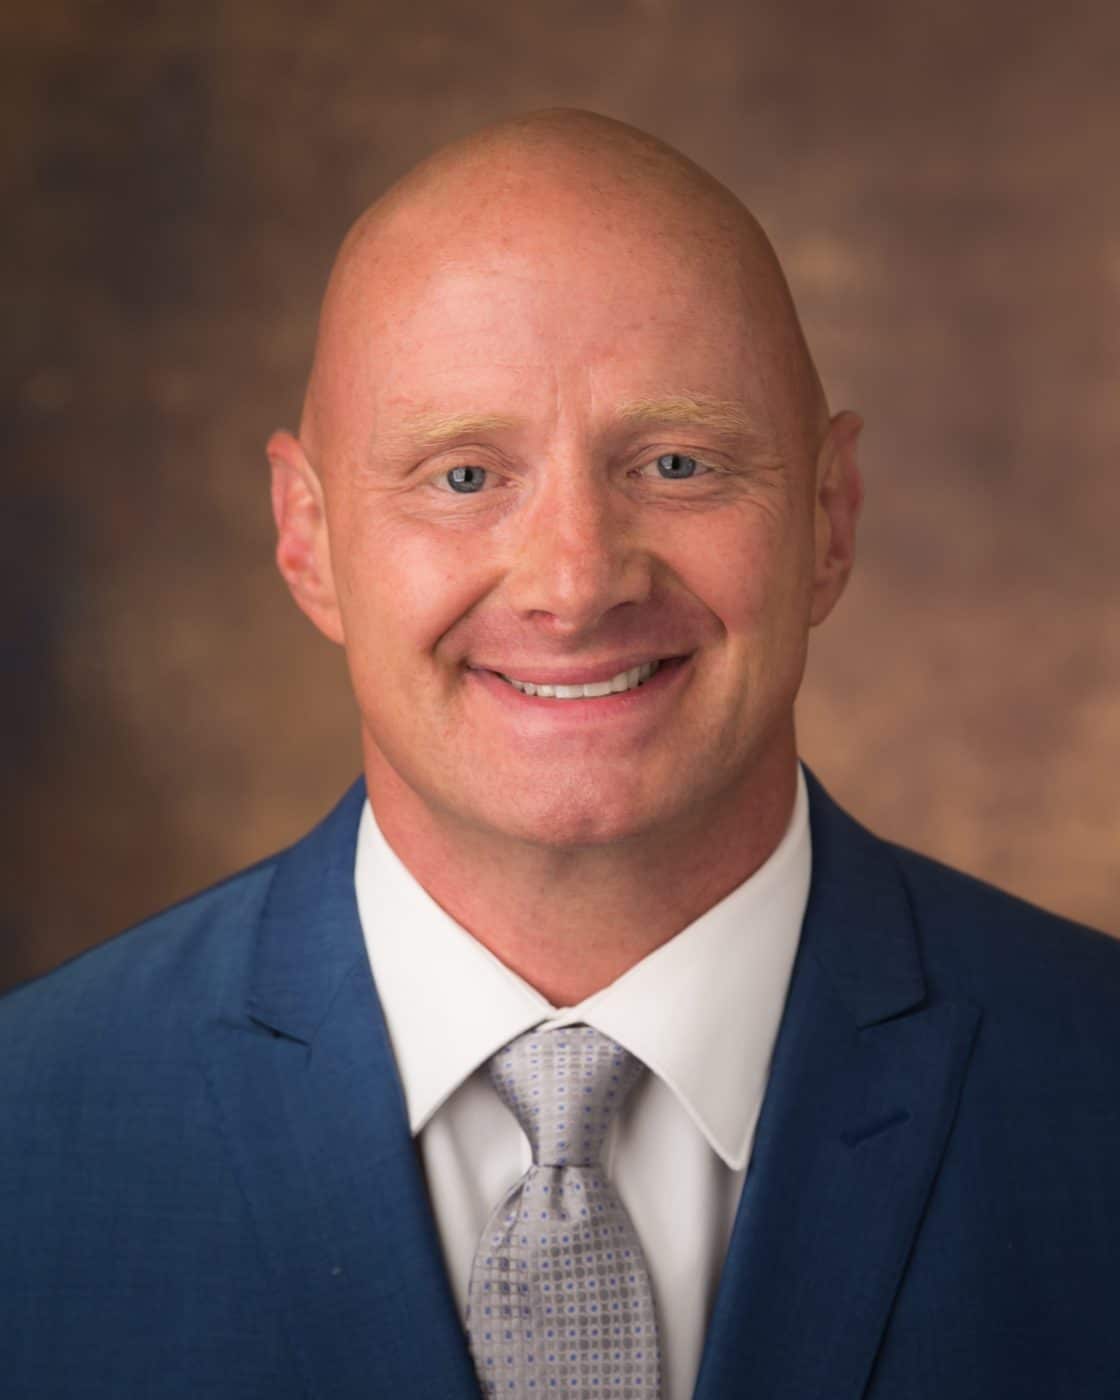 Scott Bowman - Utah State Director